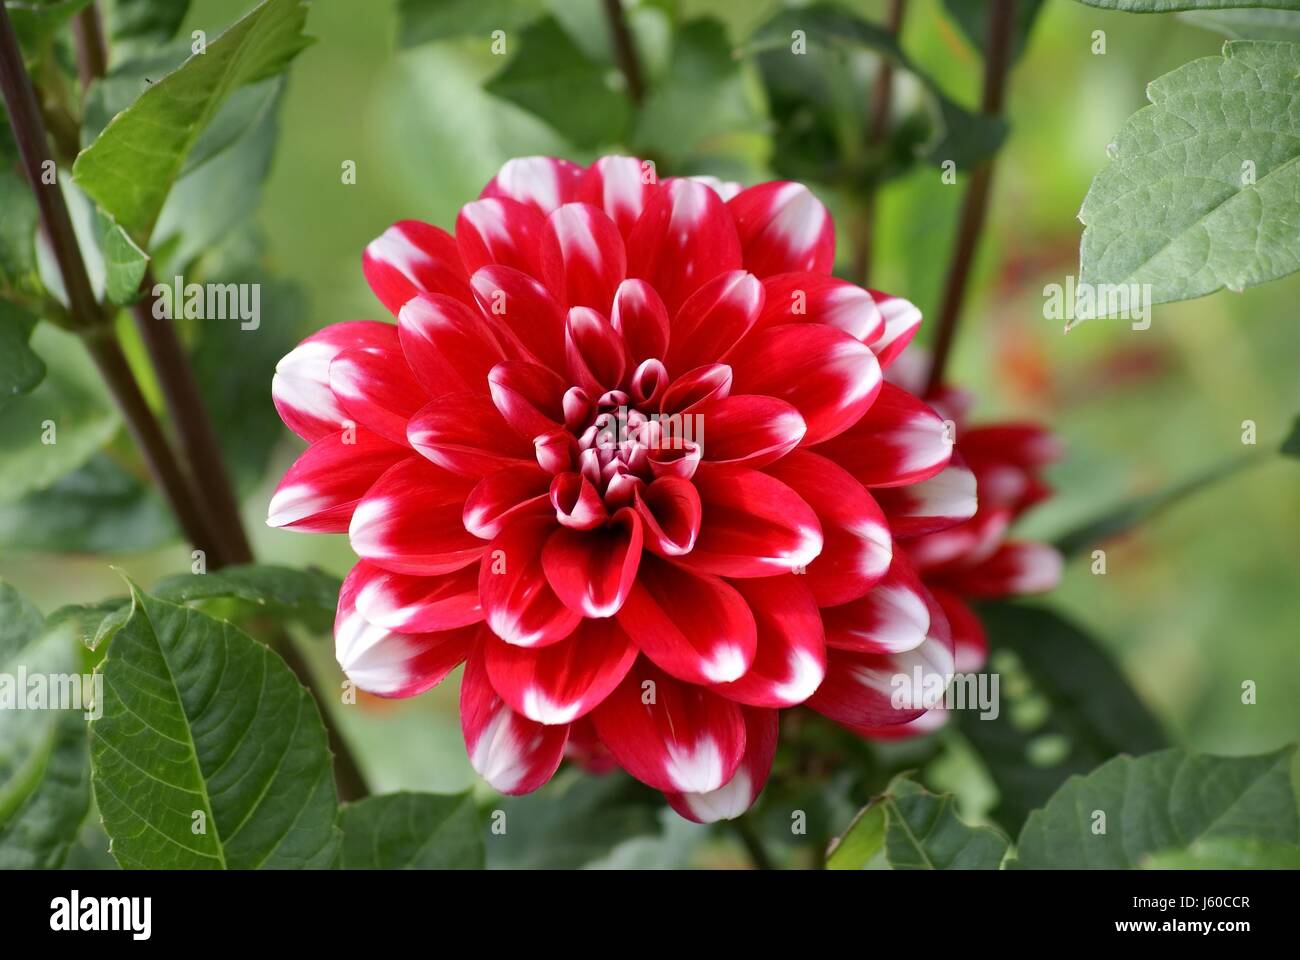 Fleur fleurir dahlia florissant arbuste décoratif enflammées red Banque D'Images